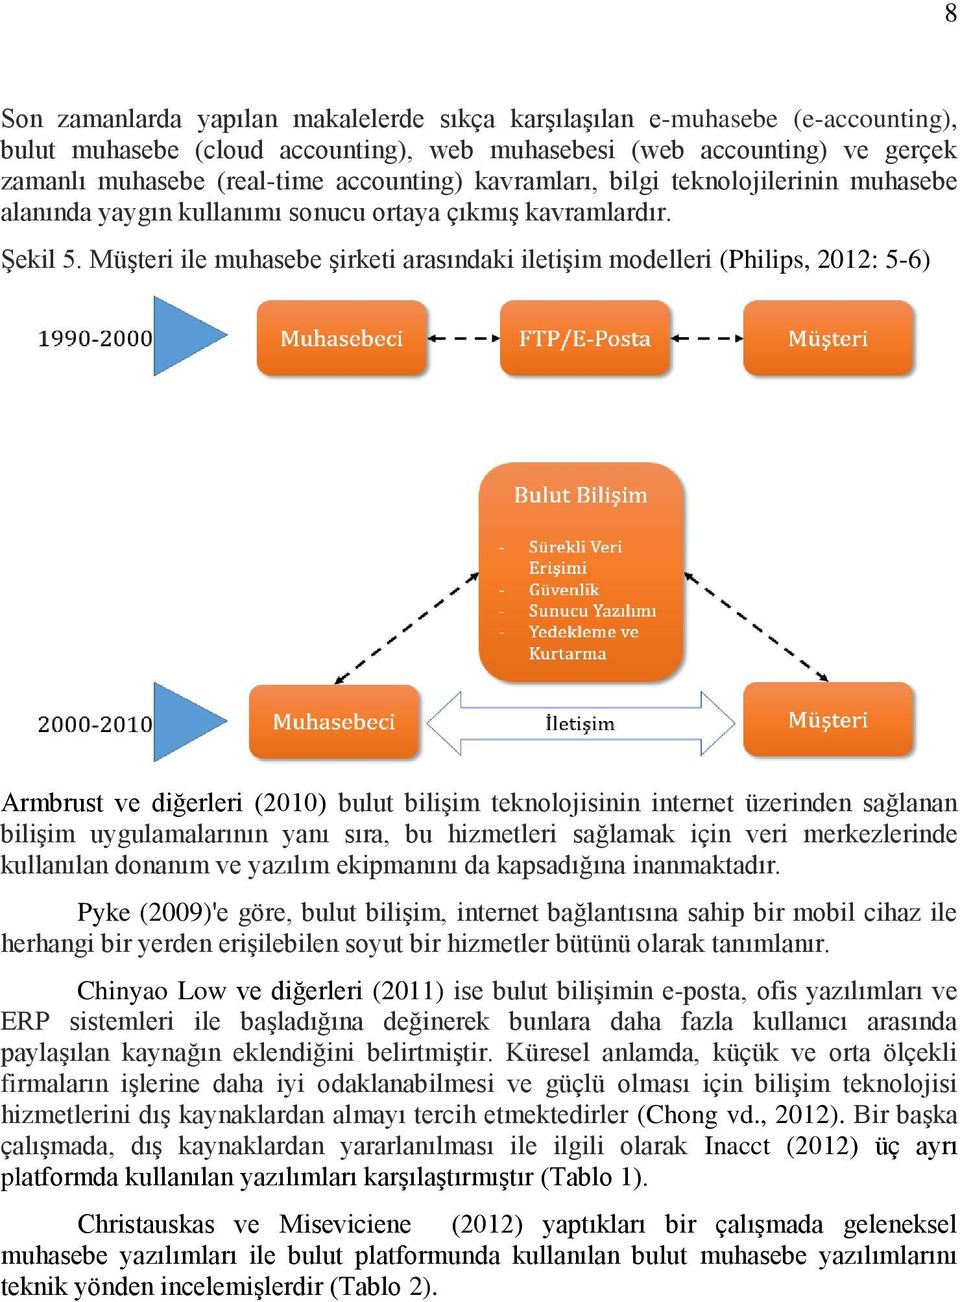 Müşteri ile muhasebe şirketi arasındaki iletişim modelleri (Philips, 2012: 5-6) Armbrust ve diğerleri (2010) bulut bilişim teknolojisinin internet üzerinden sağlanan bilişim uygulamalarının yanı